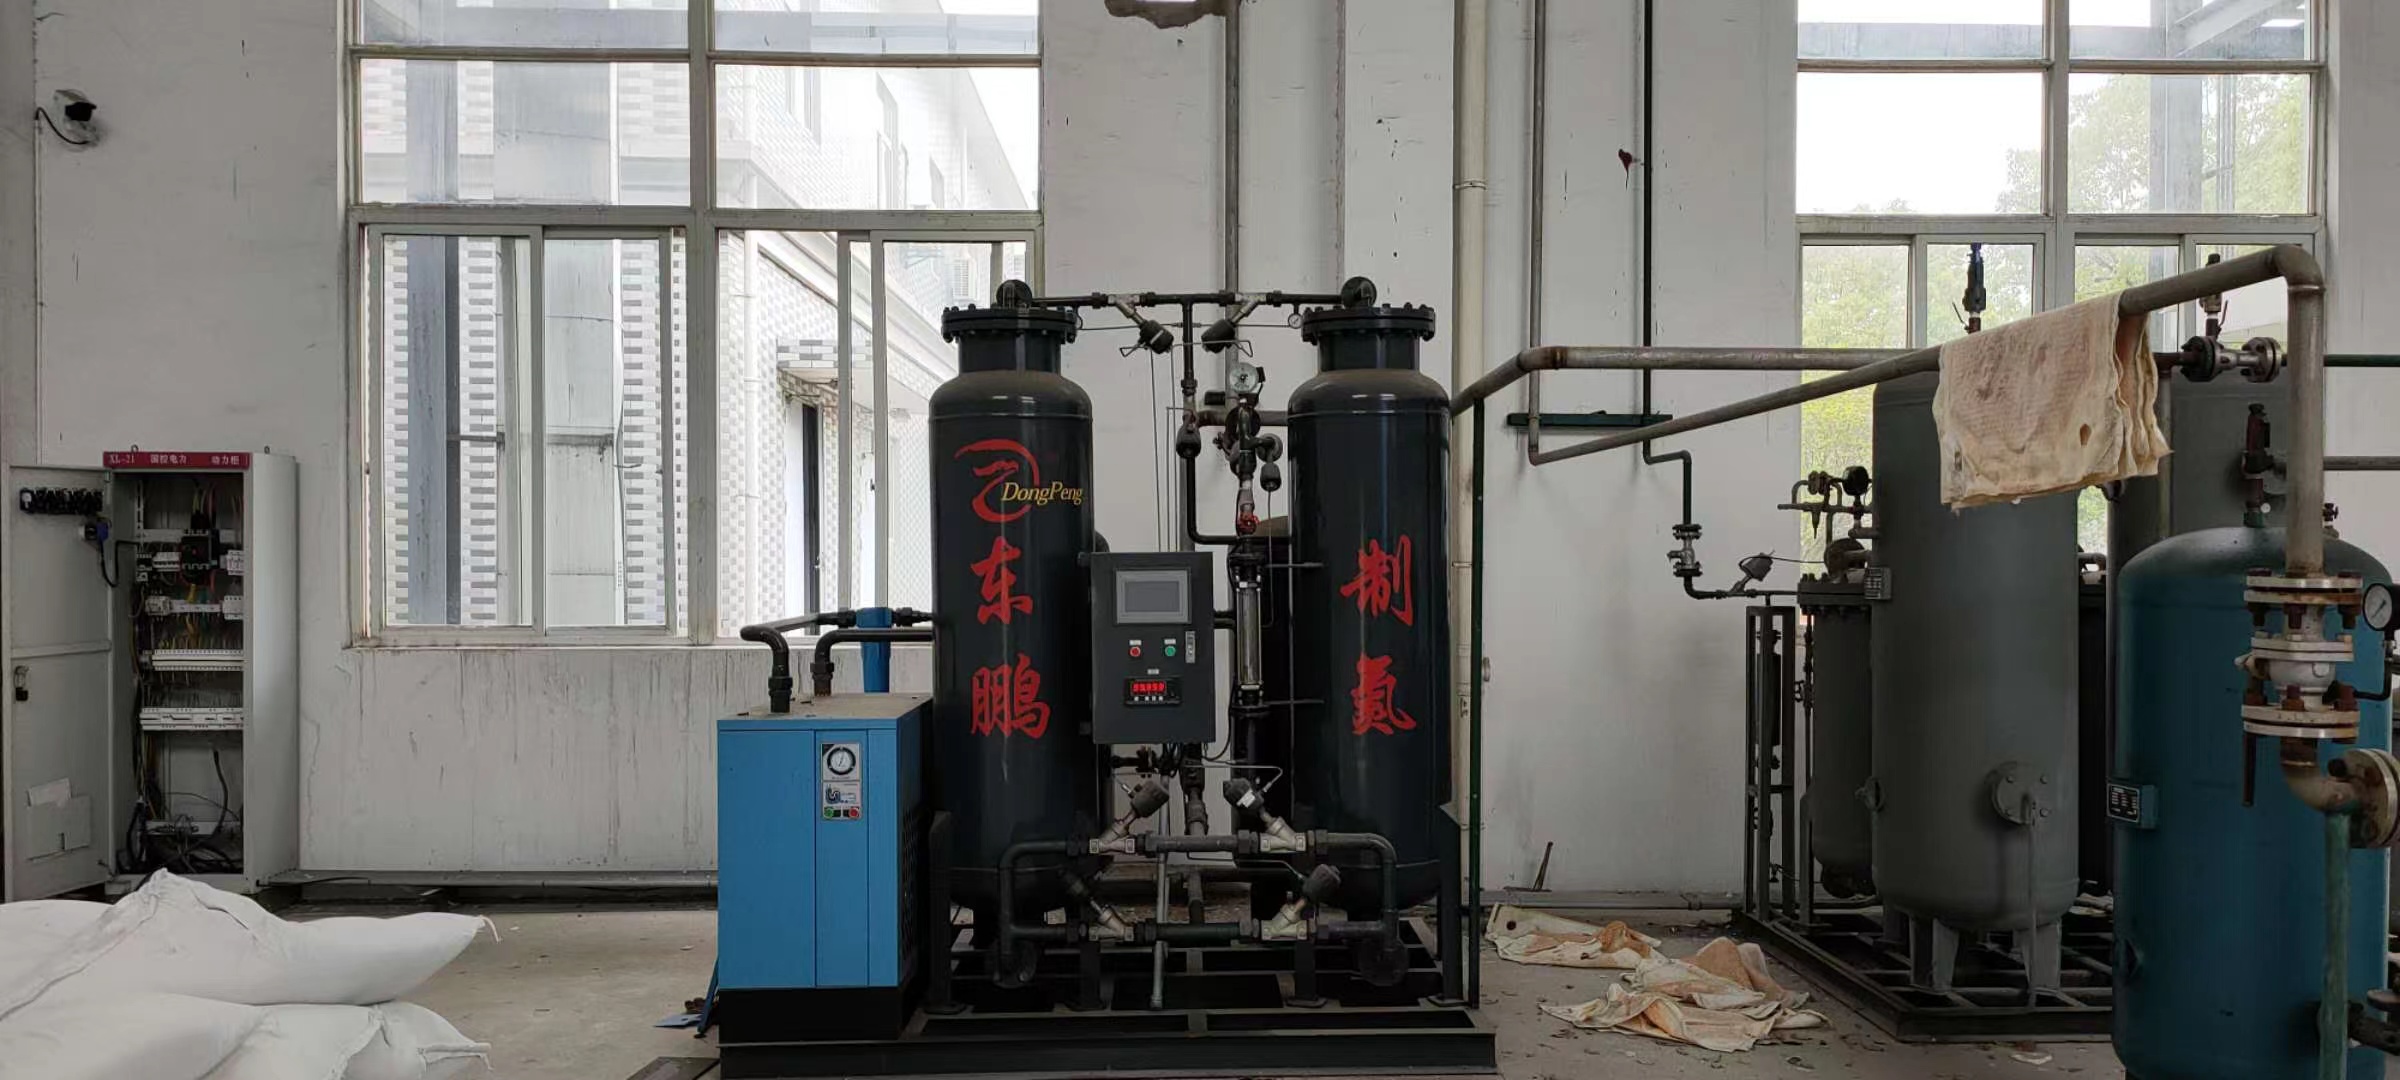 二手制氮机价格 纵海 二手制氮机回收 山东厂家供应